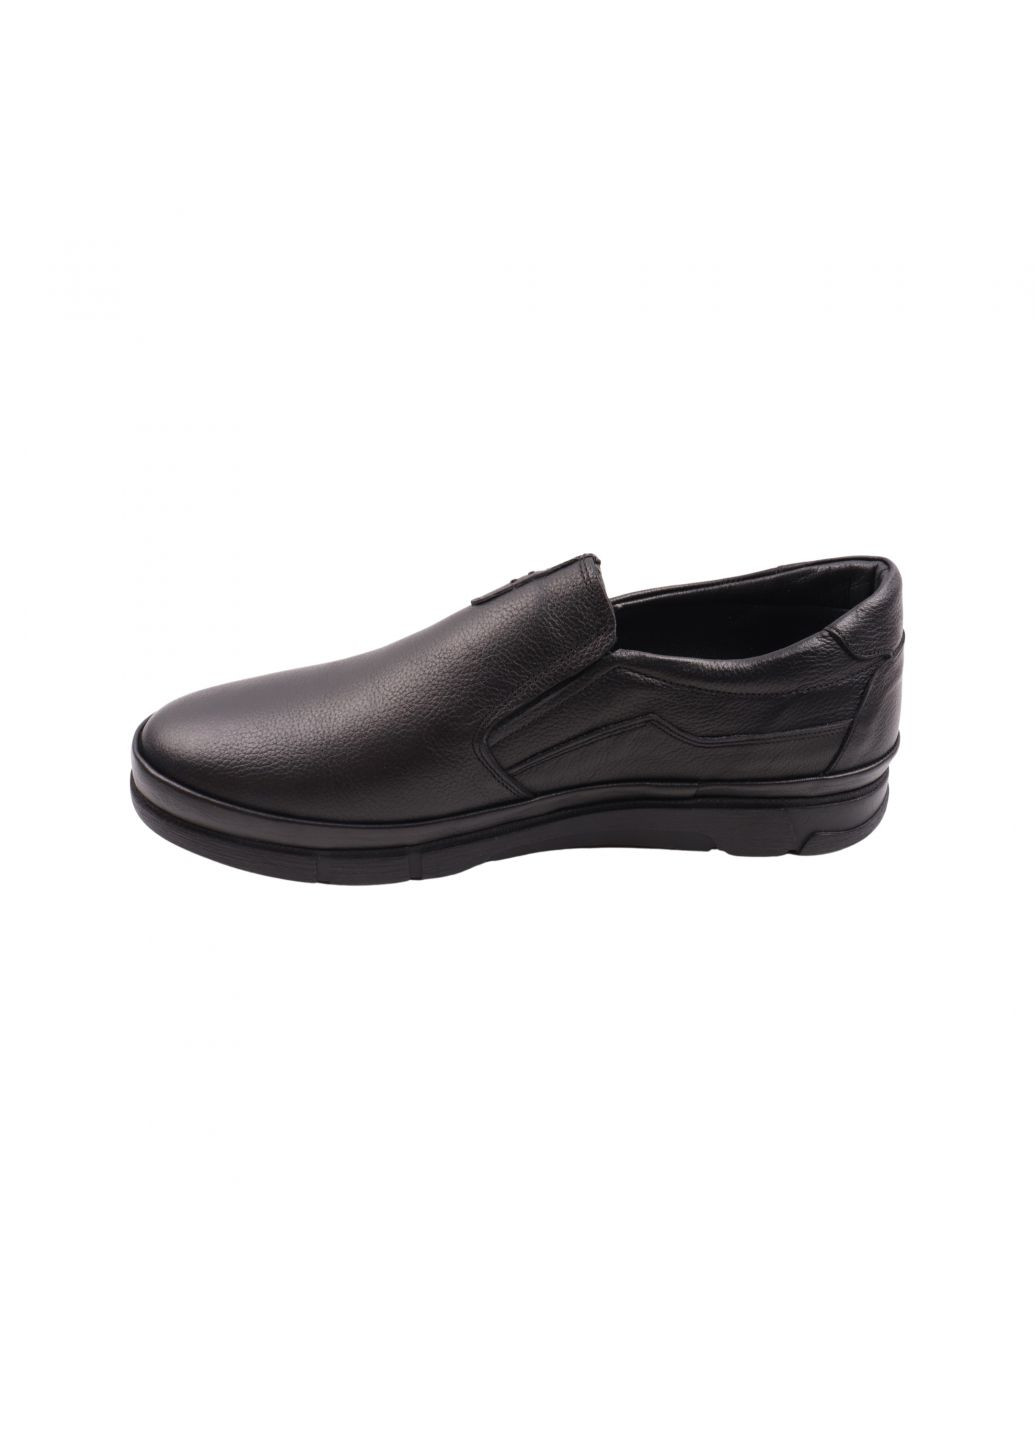 Туфлі чоловічі чорні натуральна шкіра Copalo 247-23dtc (257454413)